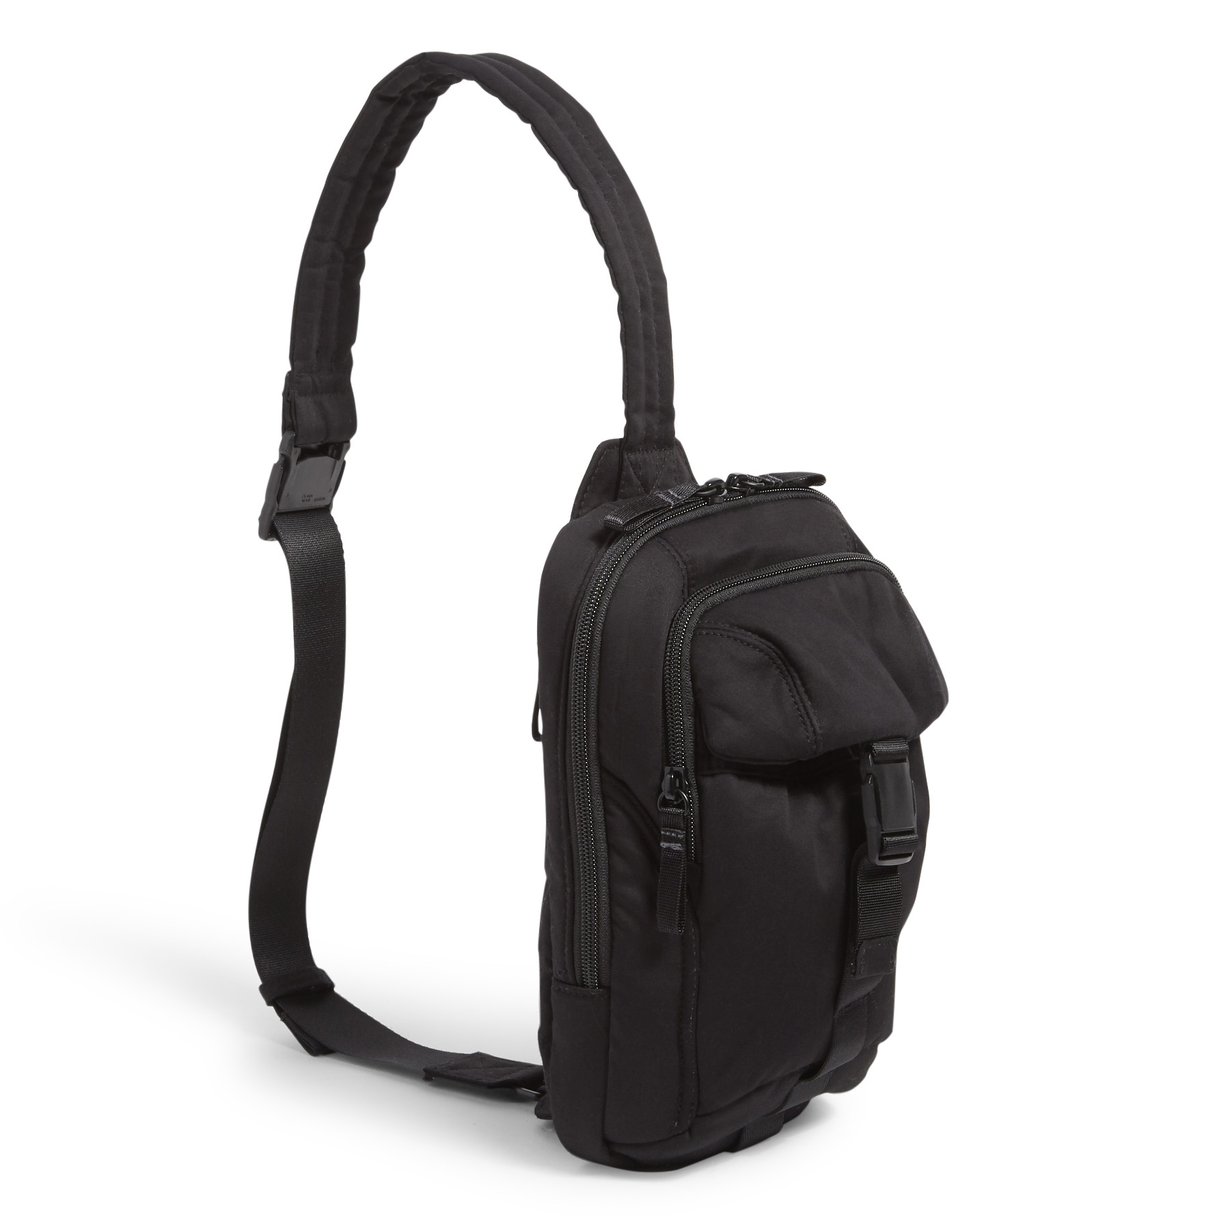 Adjustable Single Strap Backpack